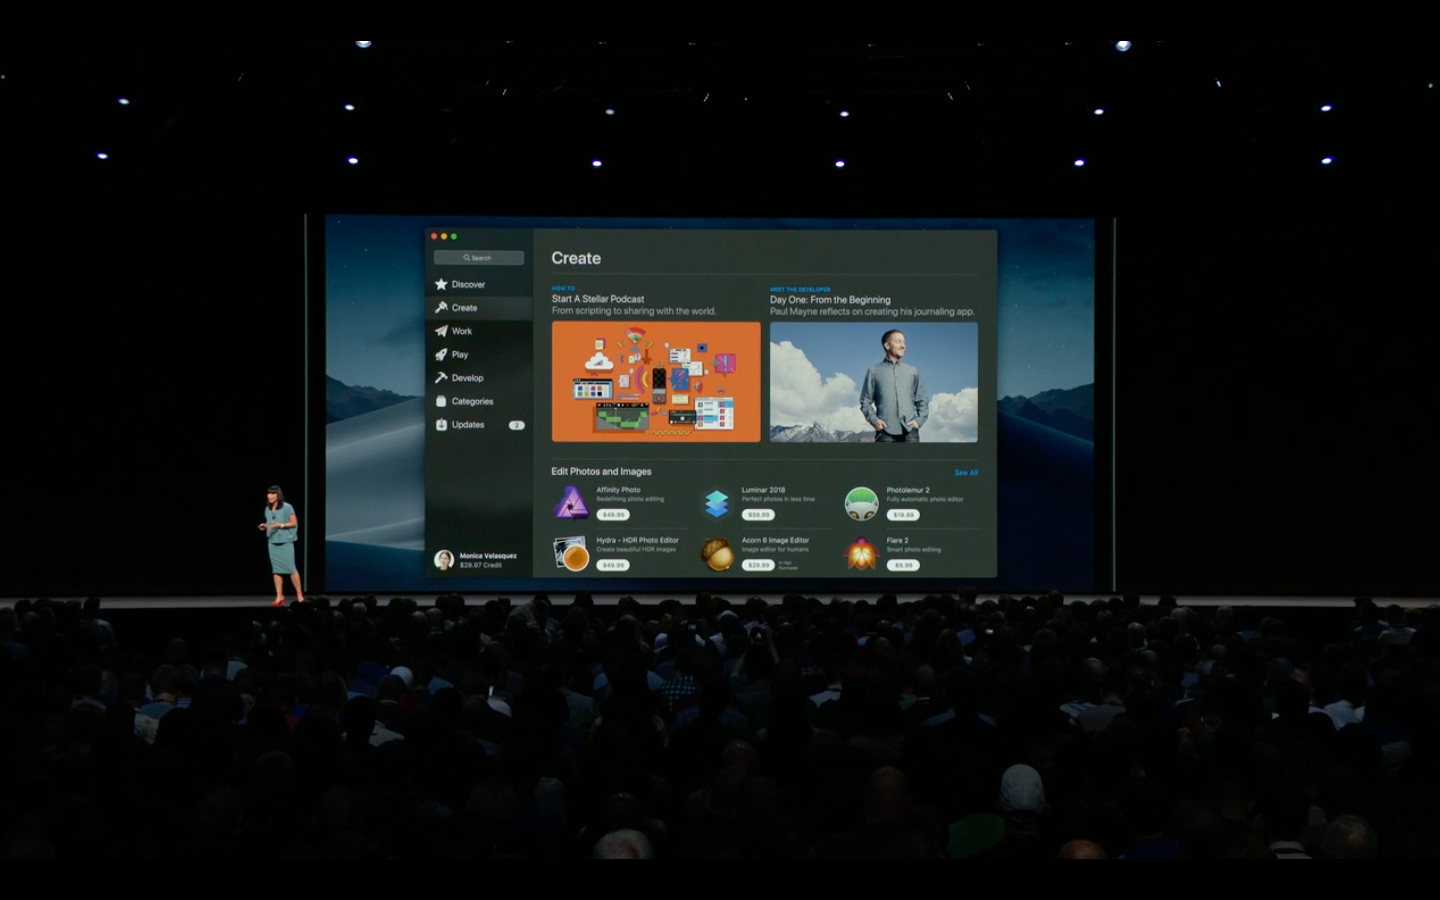 mac app for bigger previews